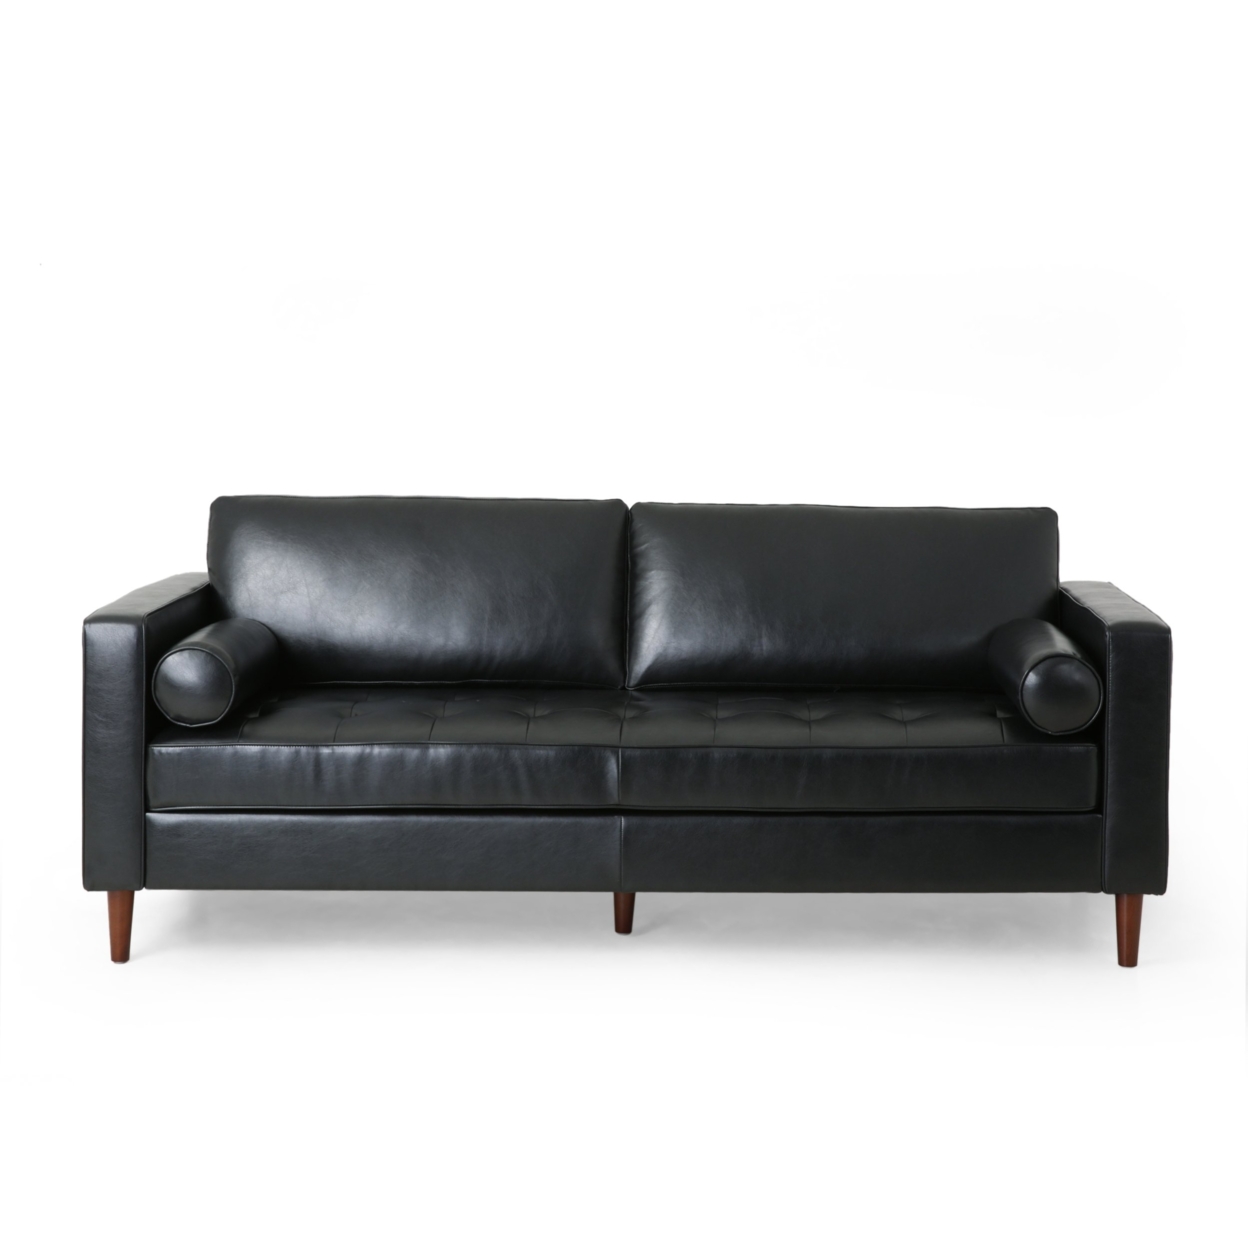 Hixon Contemporary Tufted 3 Seater Sofa - Espresso/midnight